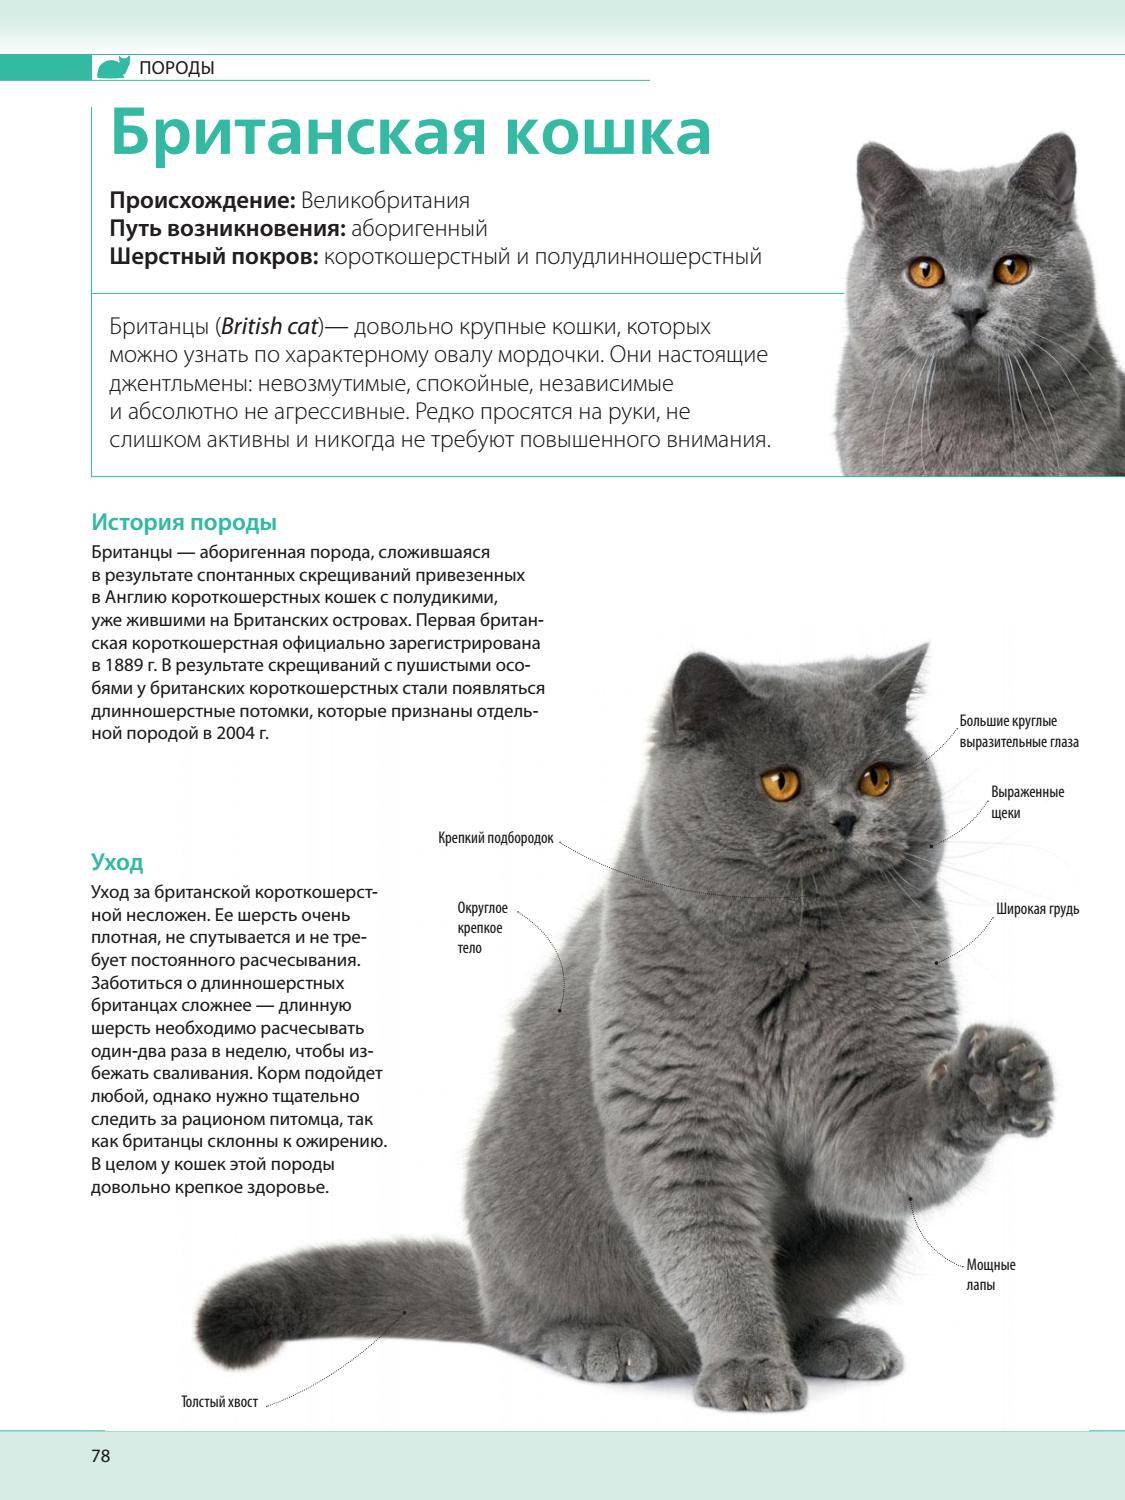 Британская длинношерстная кошка: фото и описание породы